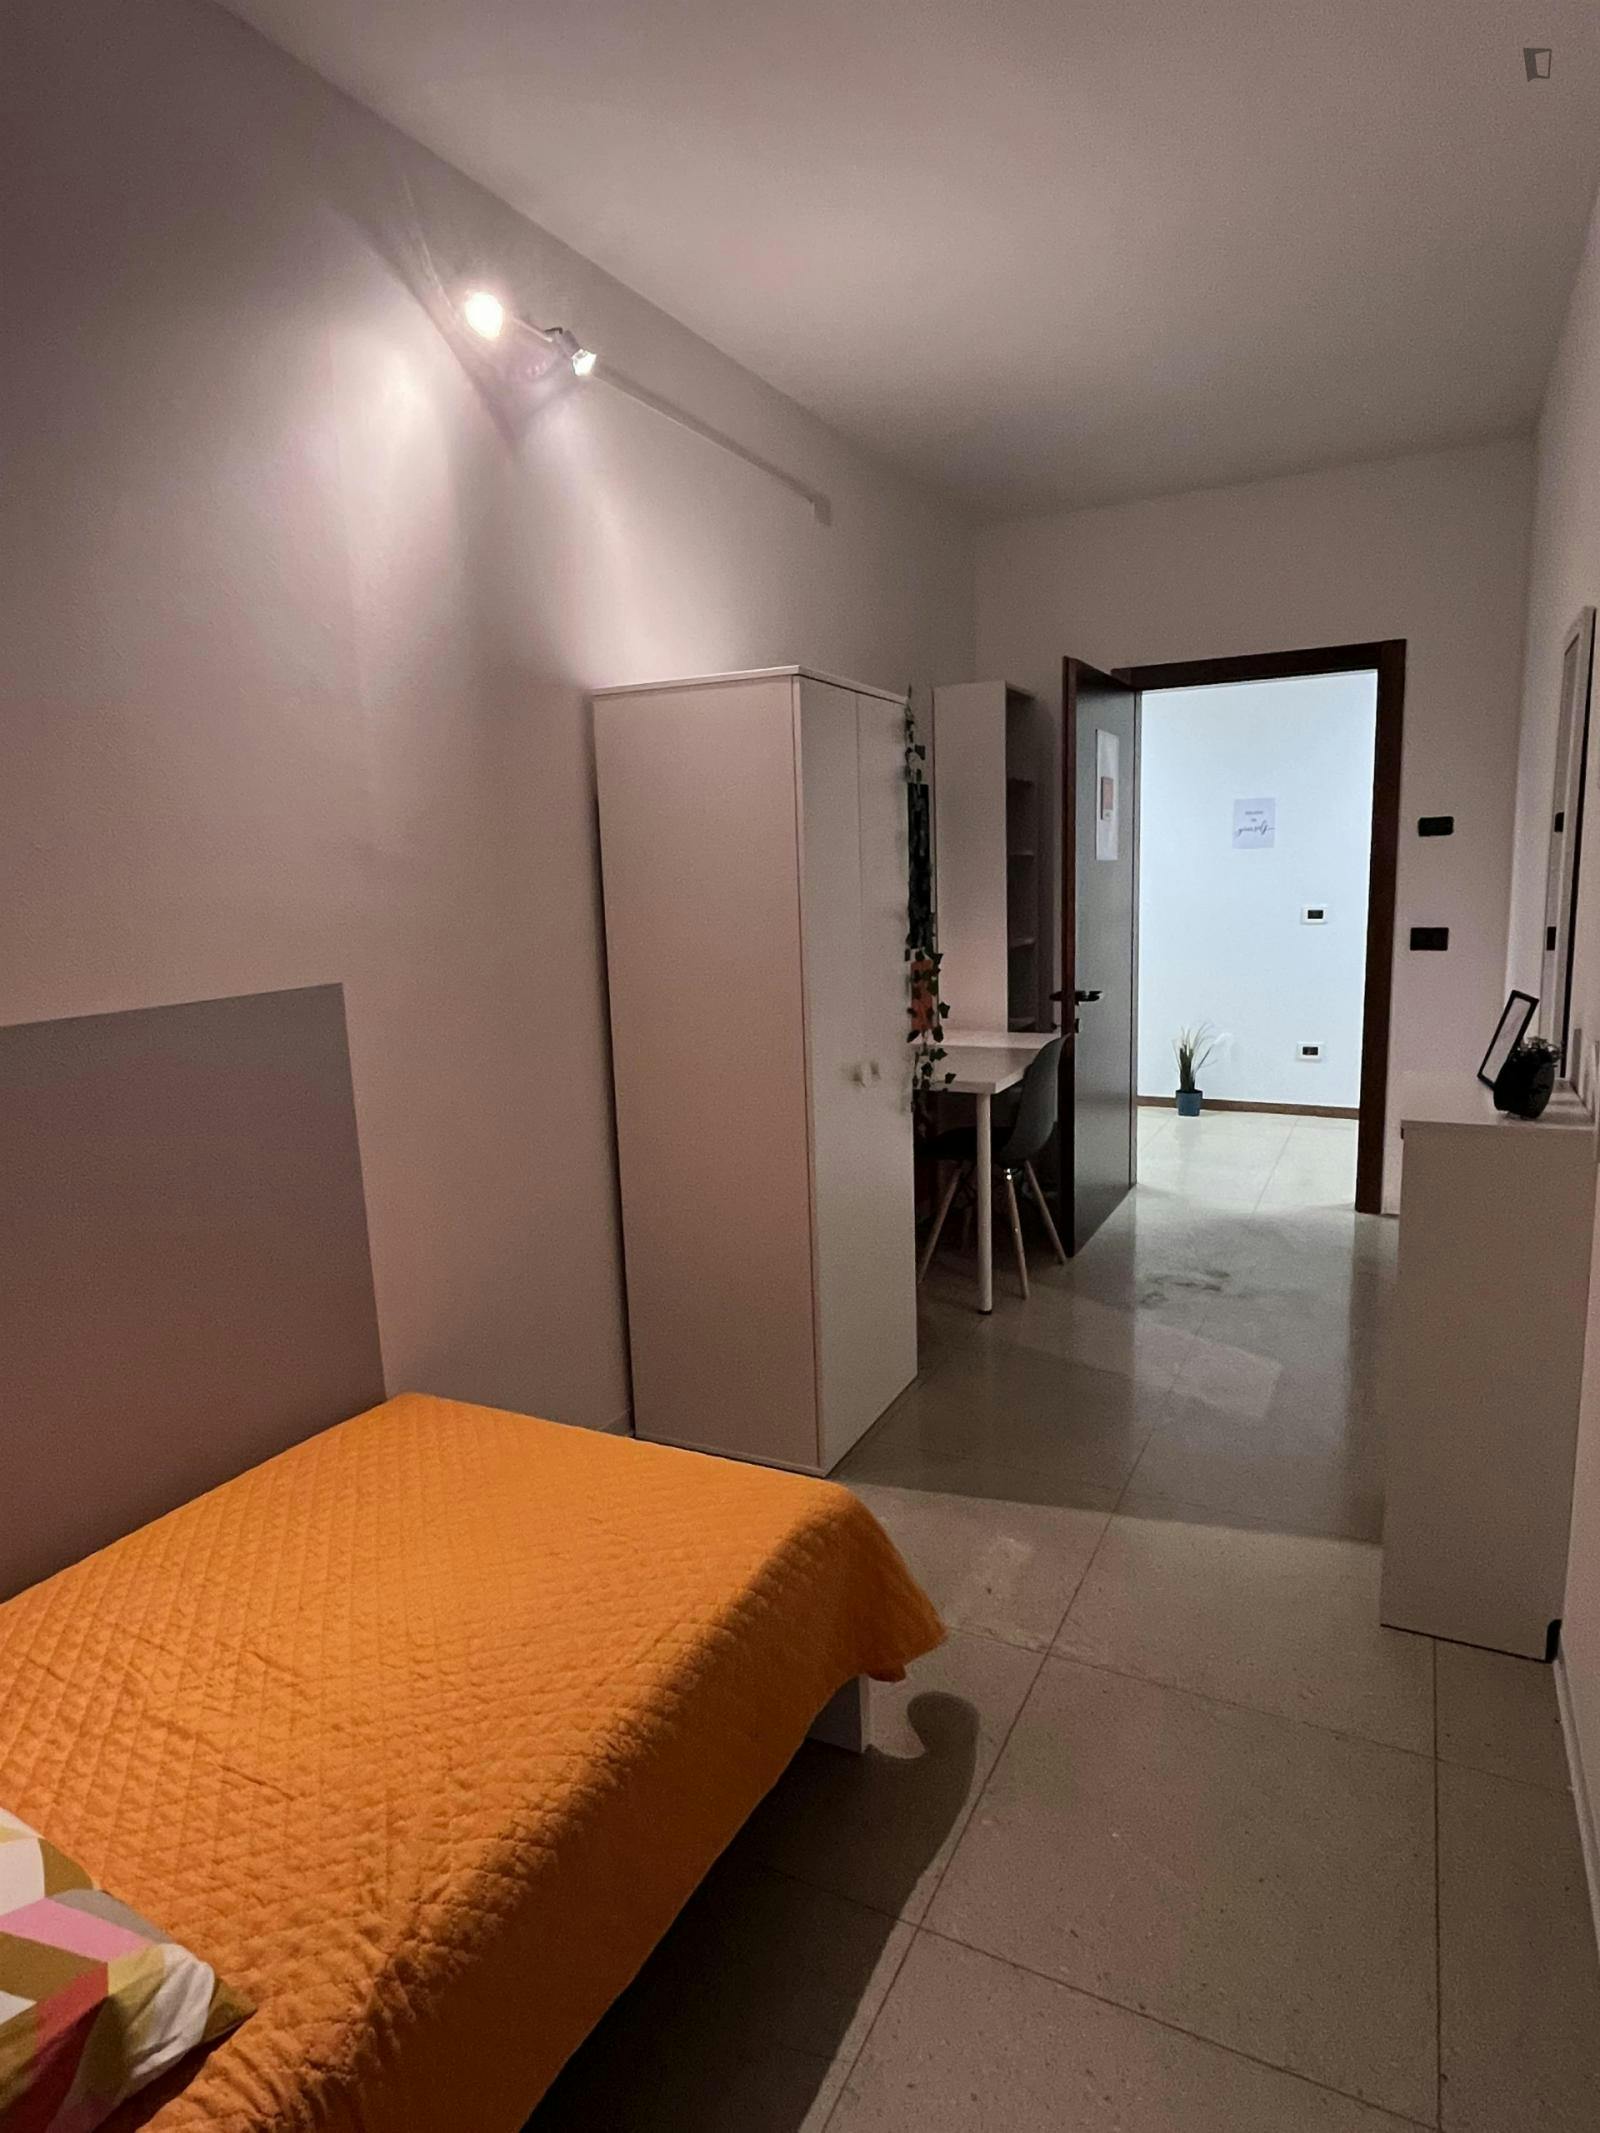 Homely single bedroom near Trento Main Train Station